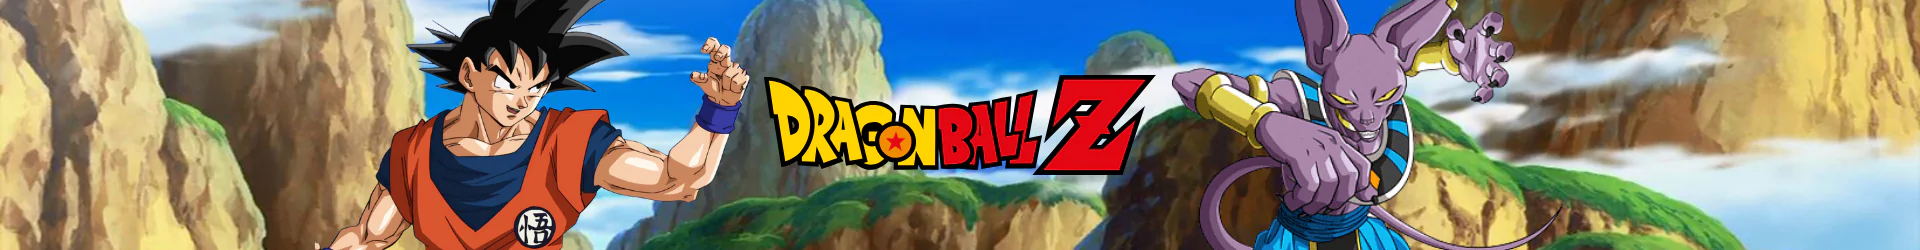 Dragon Ball pajamas banner